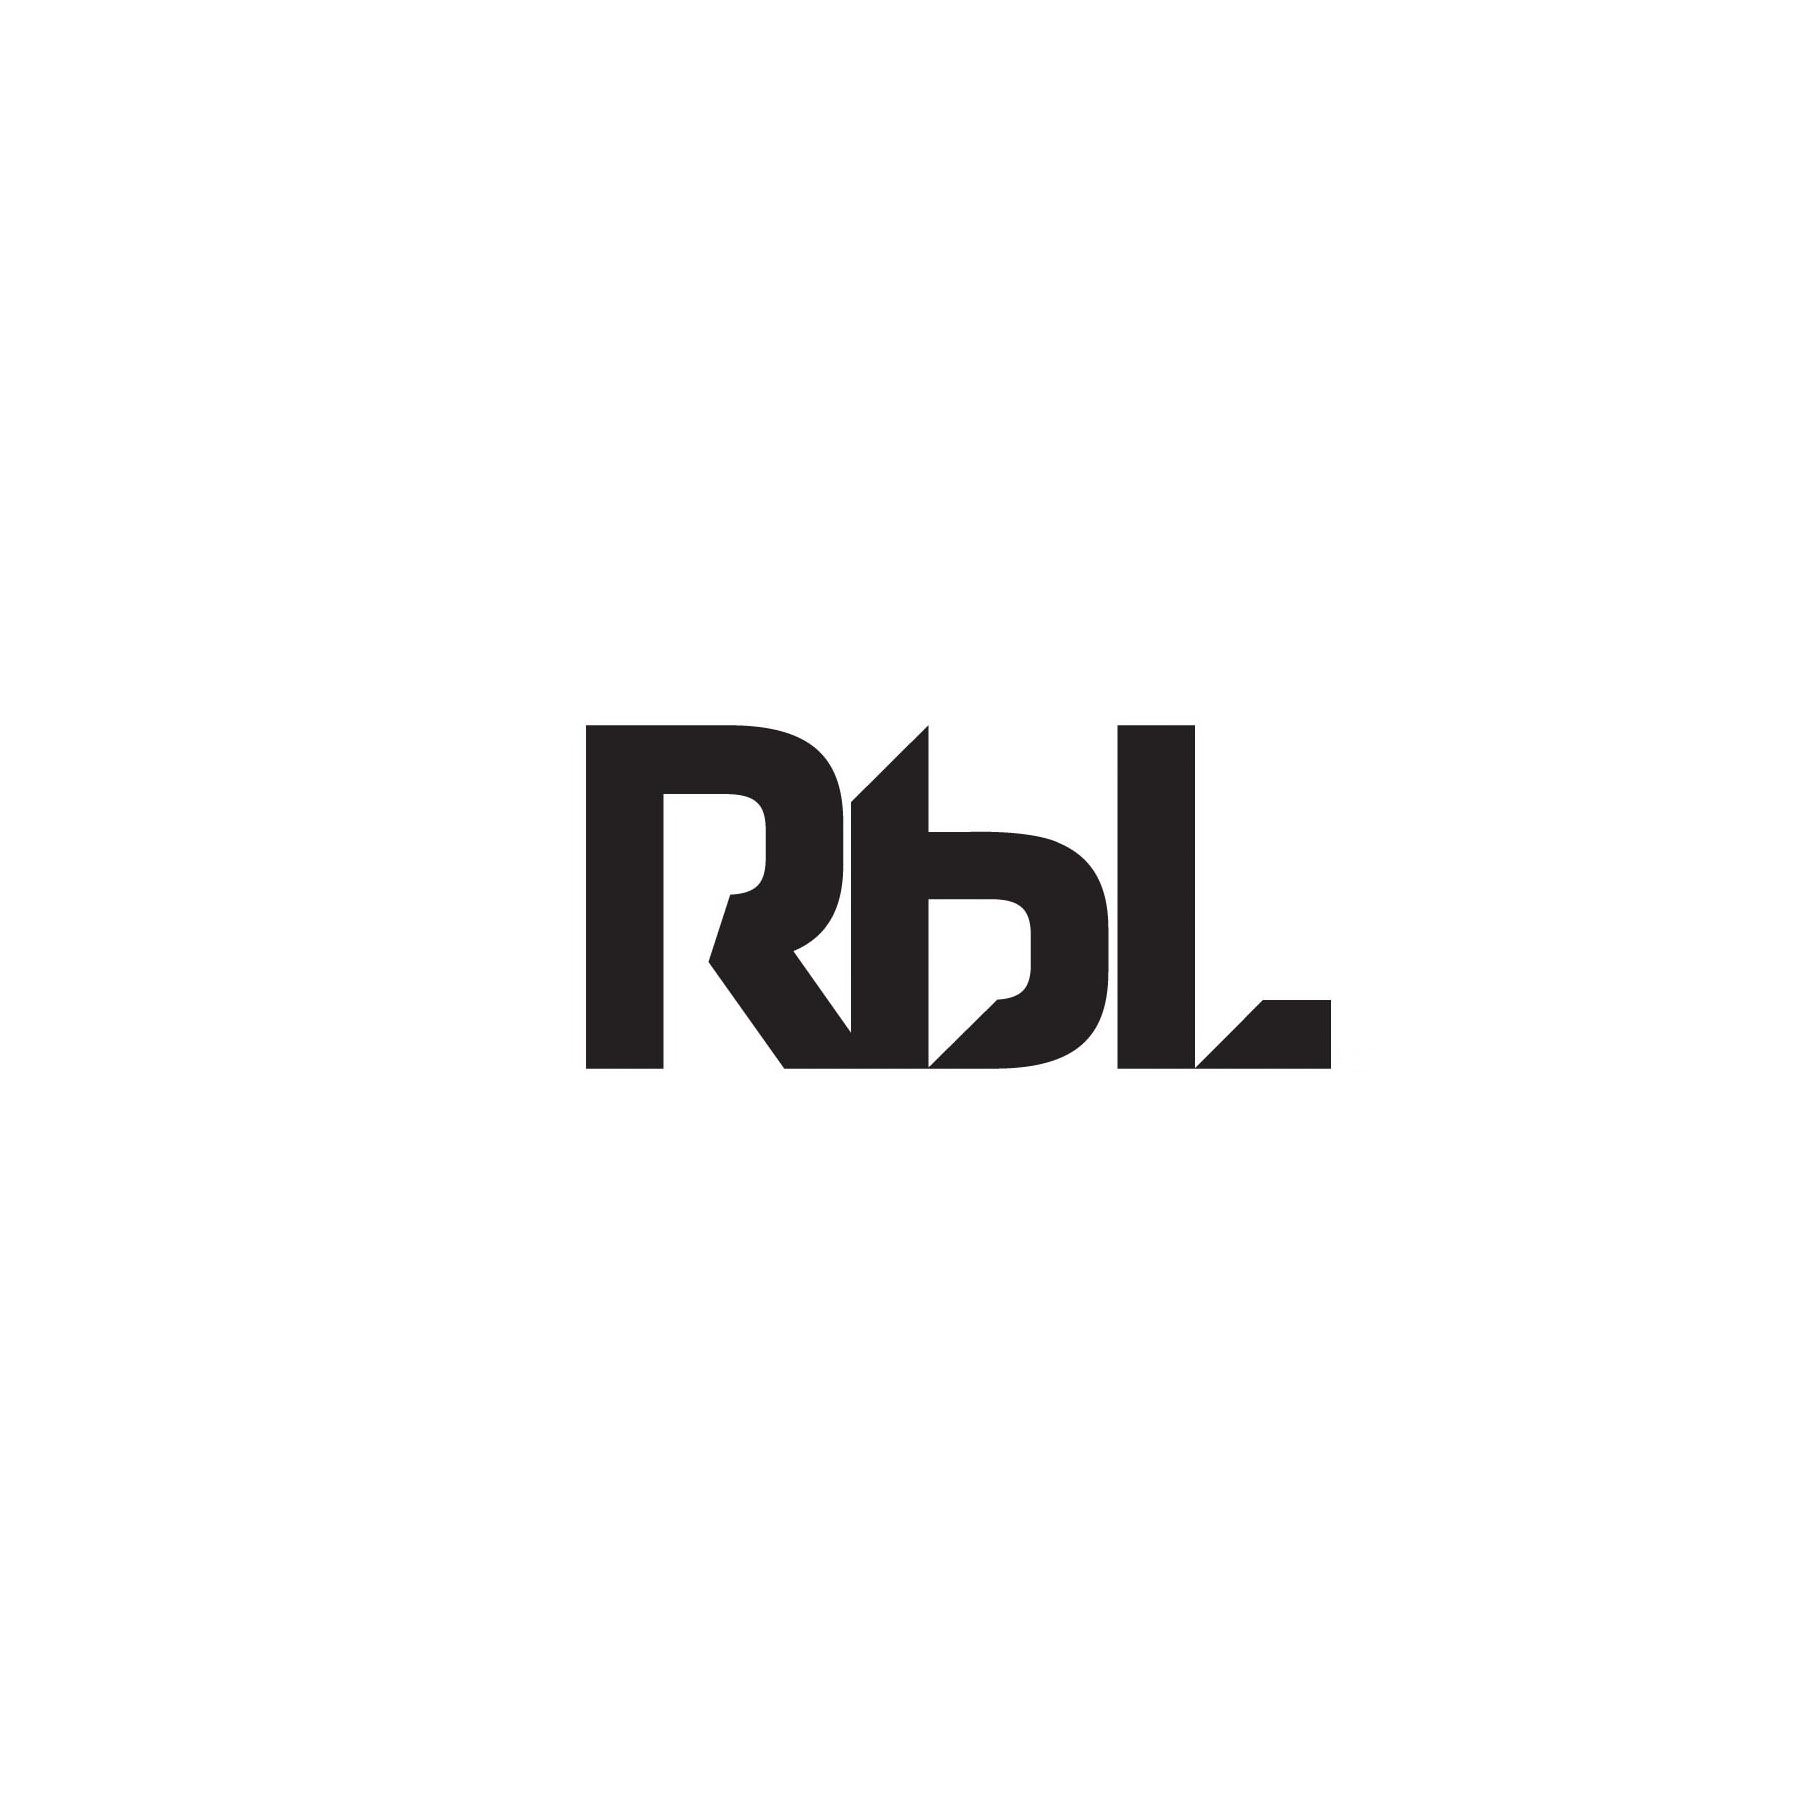 Trademark Logo RBL